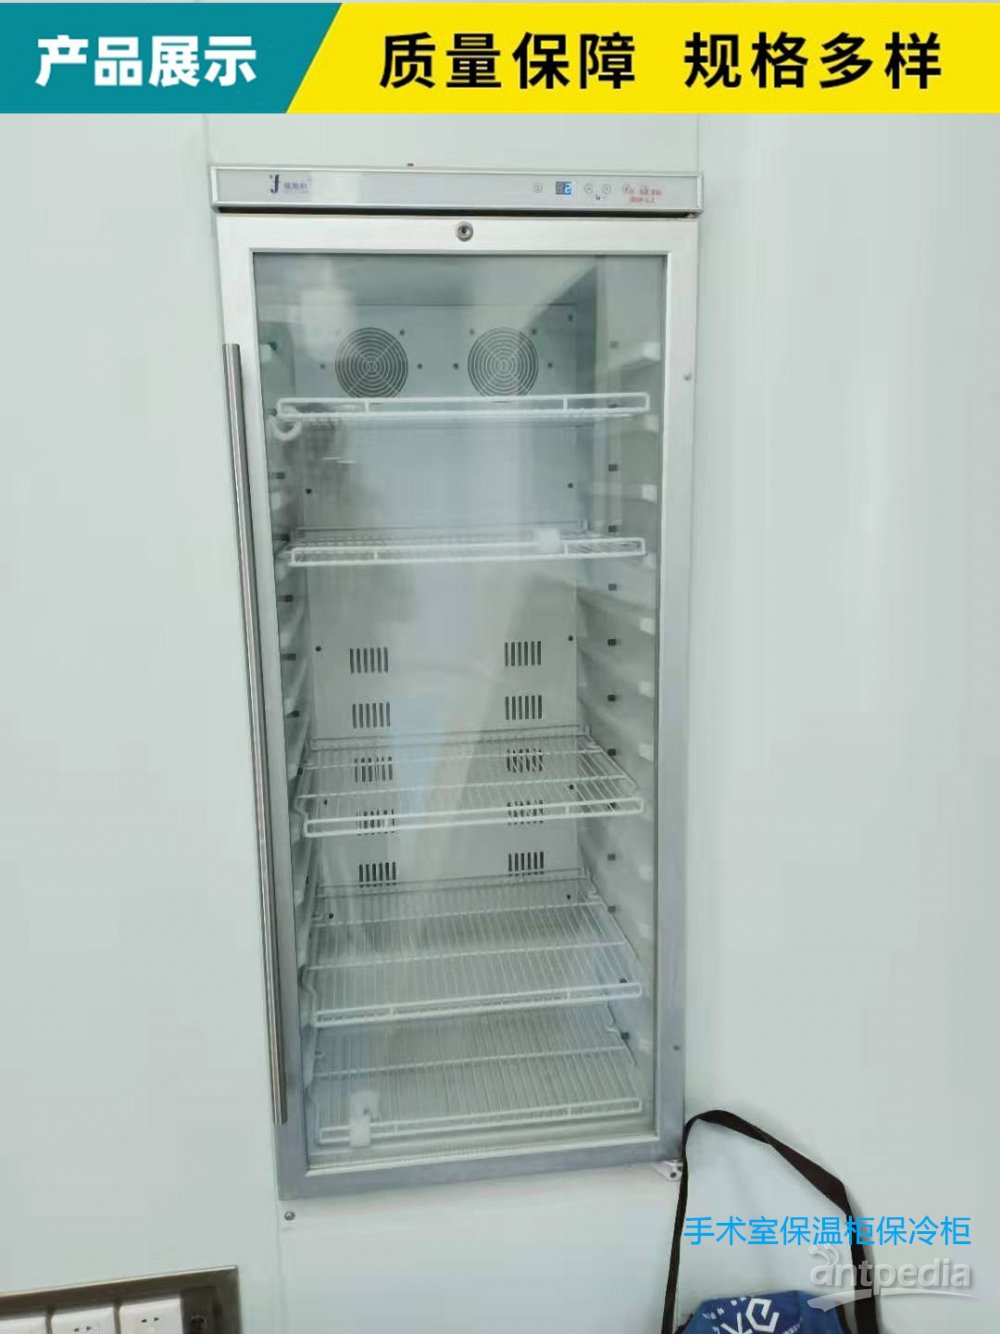 嵌入式保冷柜(血清标本冷藏柜)介绍